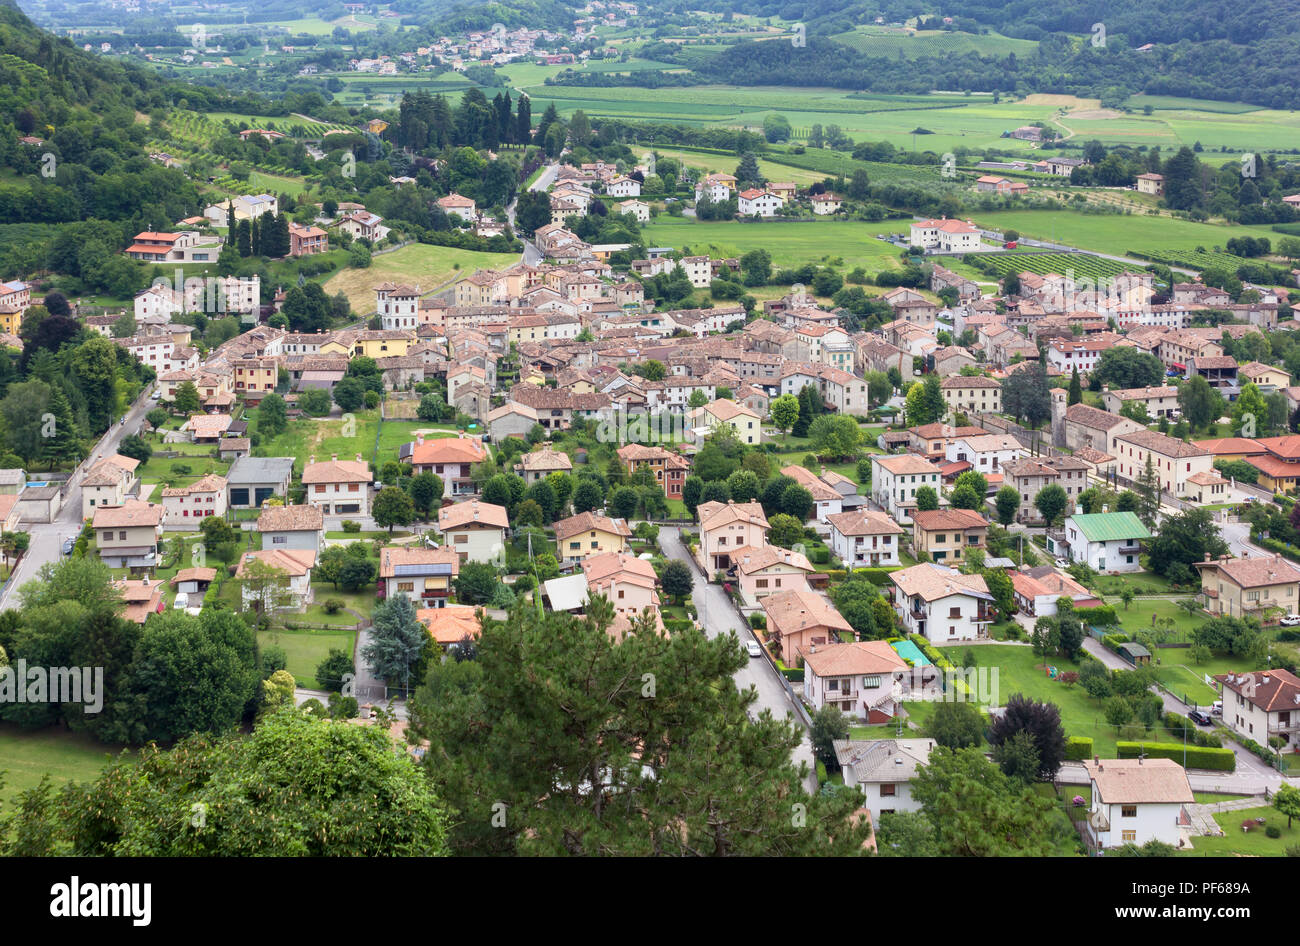 Village of Cison di Valmarino seen from Castelbrando, in the Prosecco wine region, Italy Stock Photo